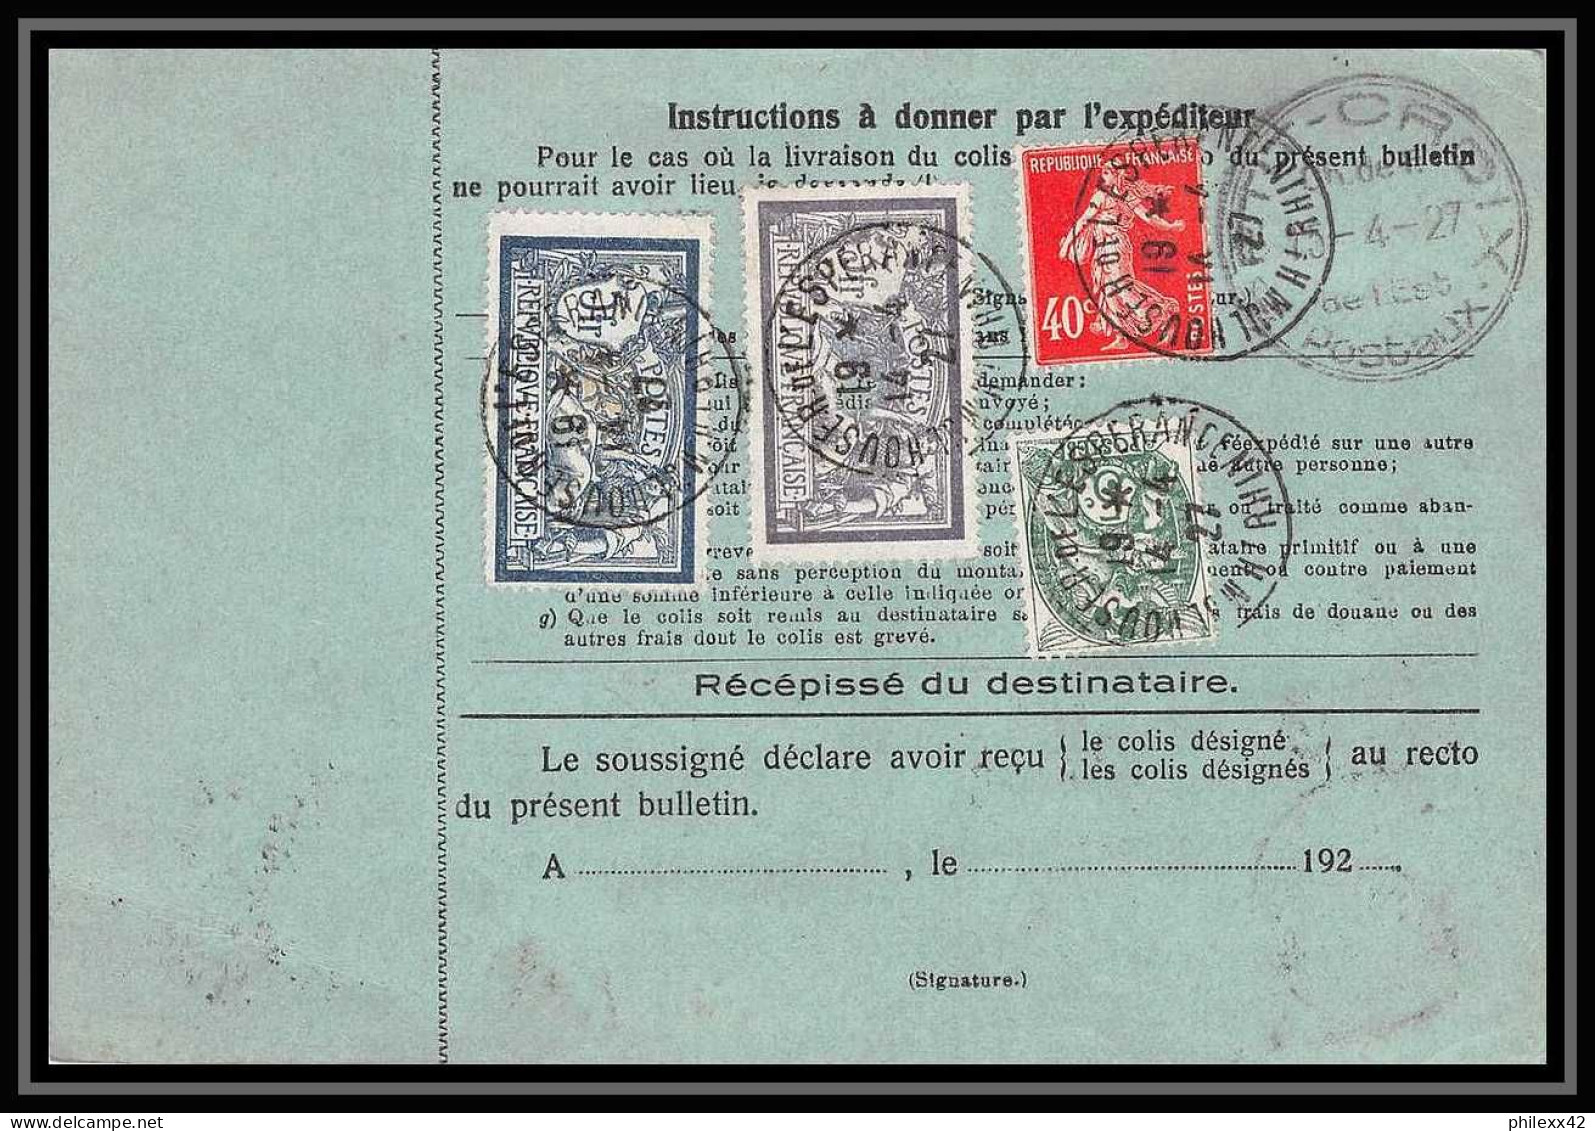 25023 Bulletin D'expédition France Colis Postaux Fiscal Haut Rhin - 1927 Mulhouse Merson 123+145 GARE - Briefe U. Dokumente